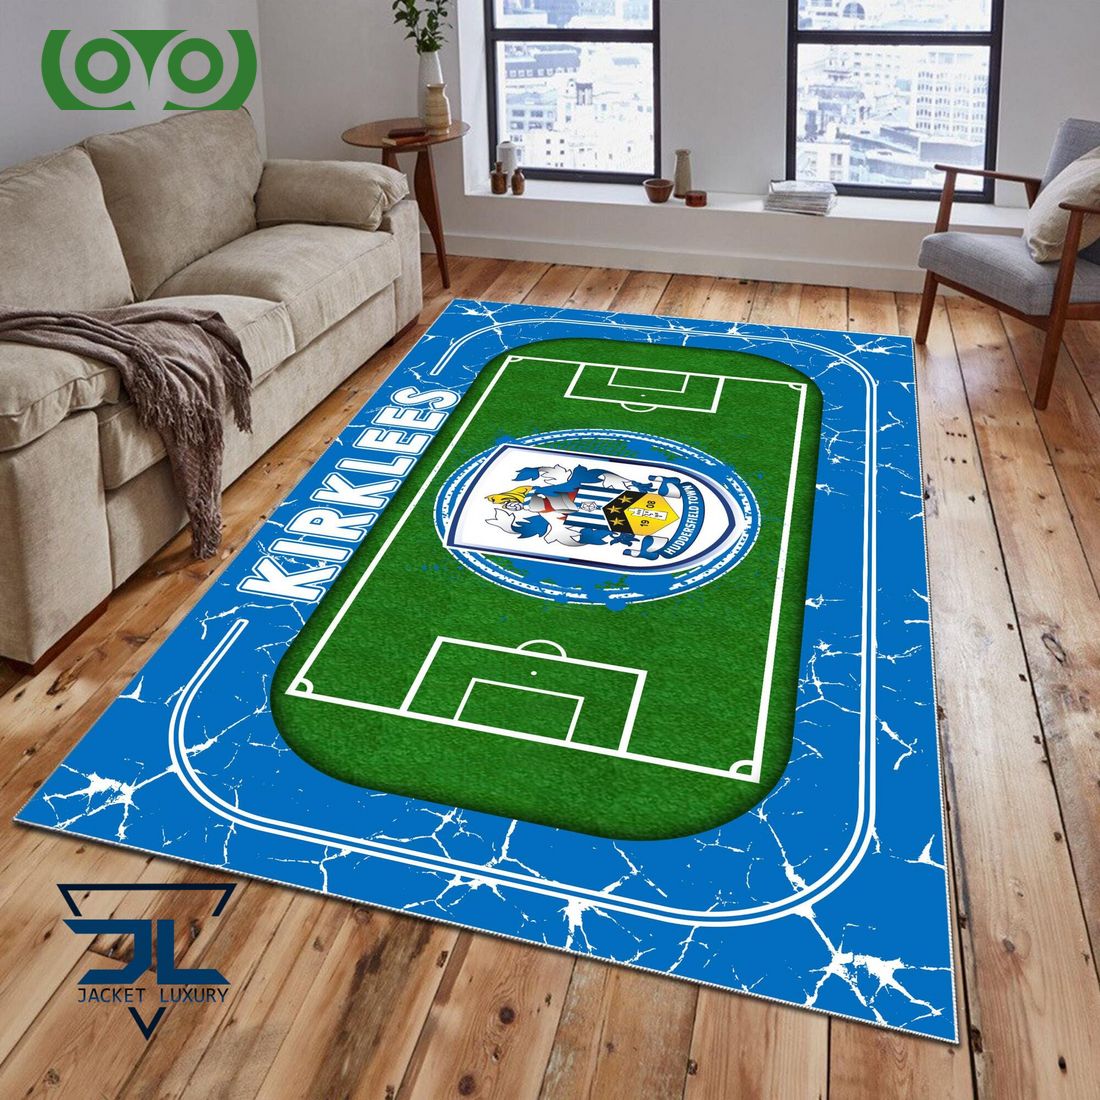 huddersfield town a f c efl championship carpet rug 1 y2owF